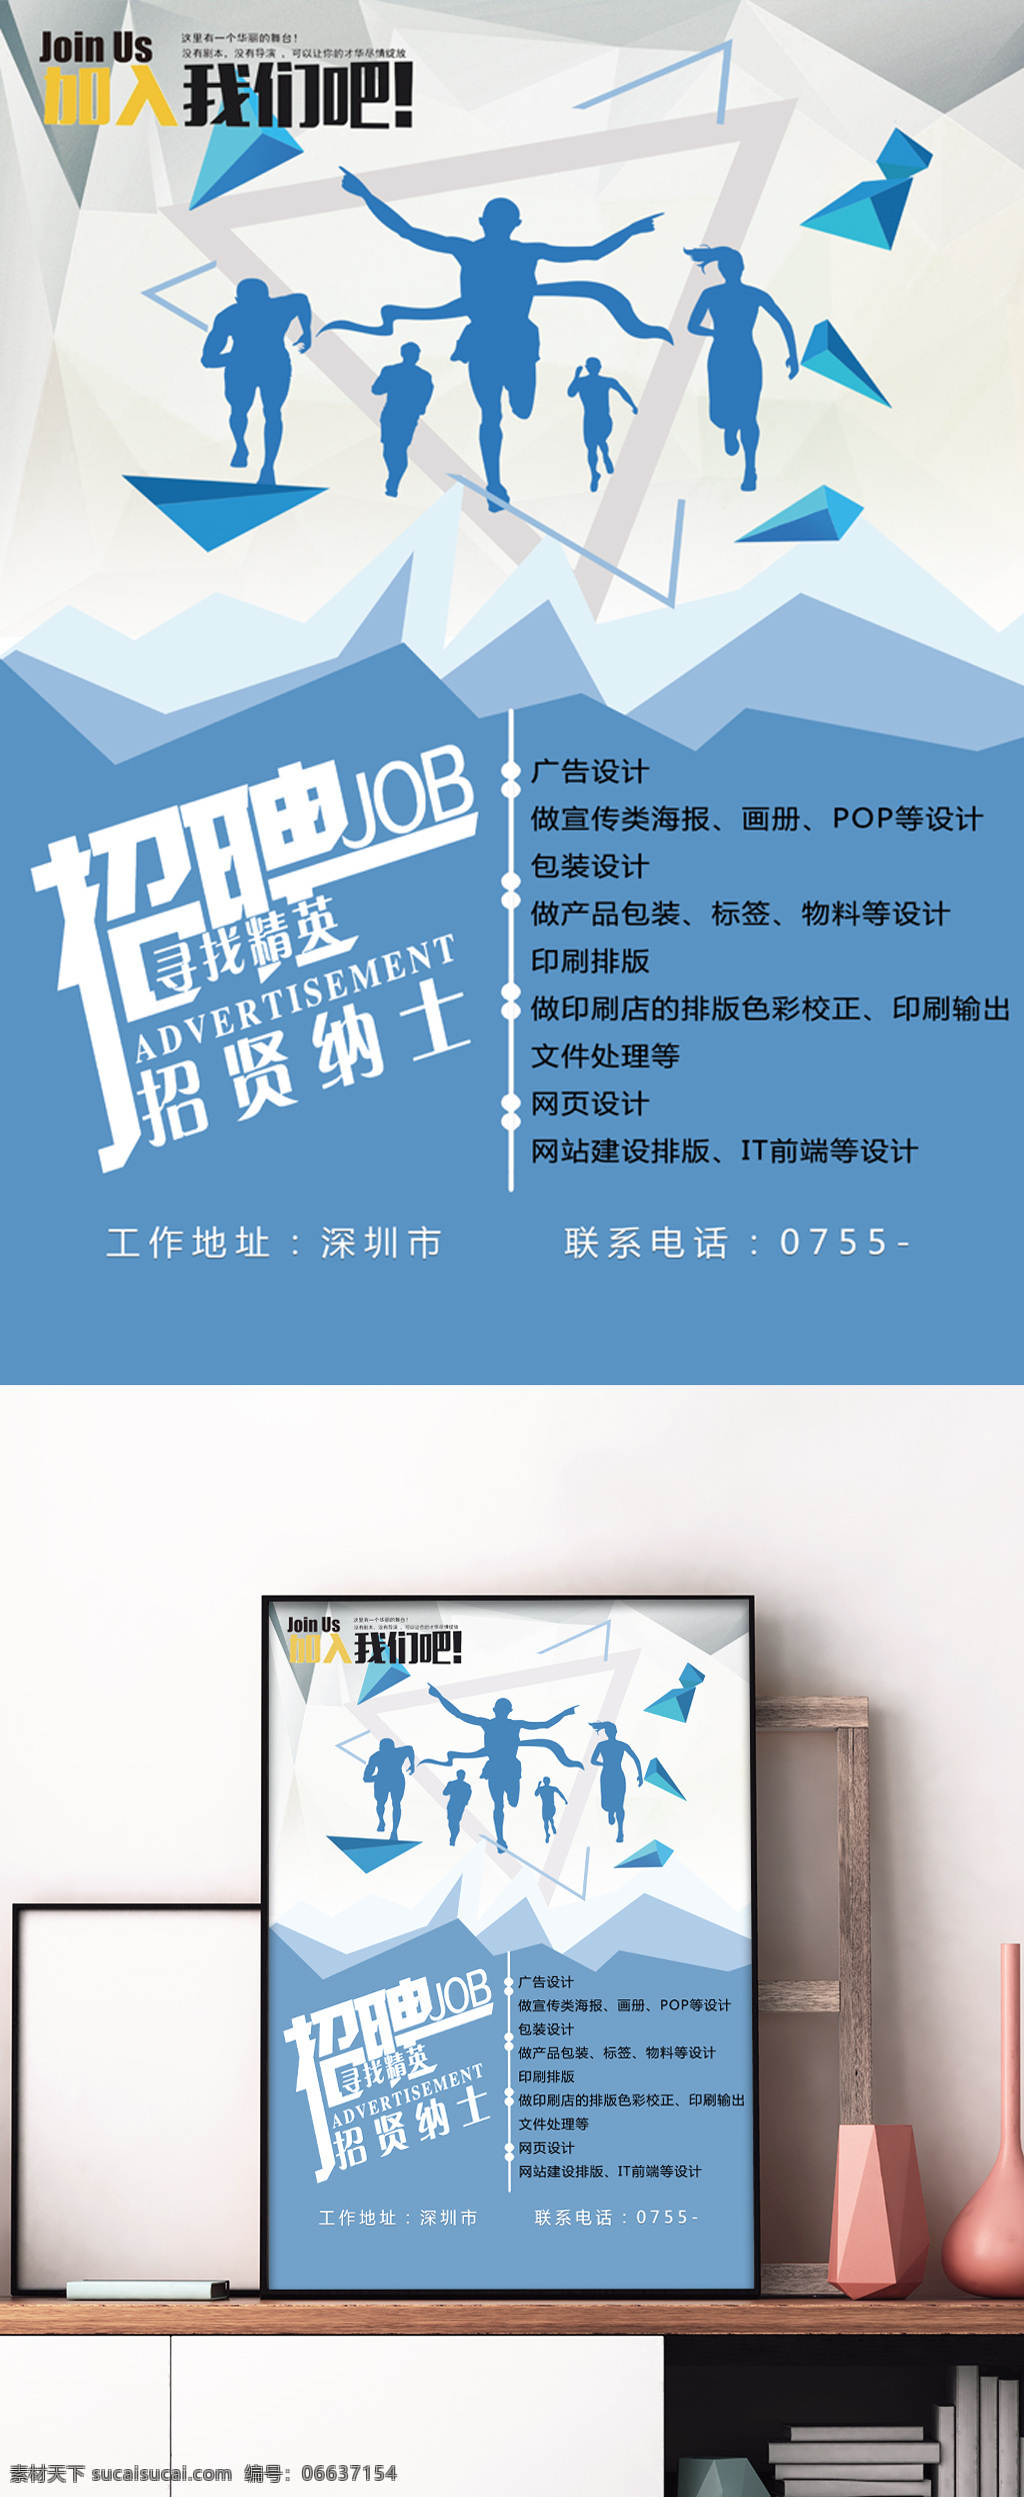 蓝色 几何 创意 原创 招聘 海报 加入我们 招聘纳士 深圳市招聘 广告行业招聘